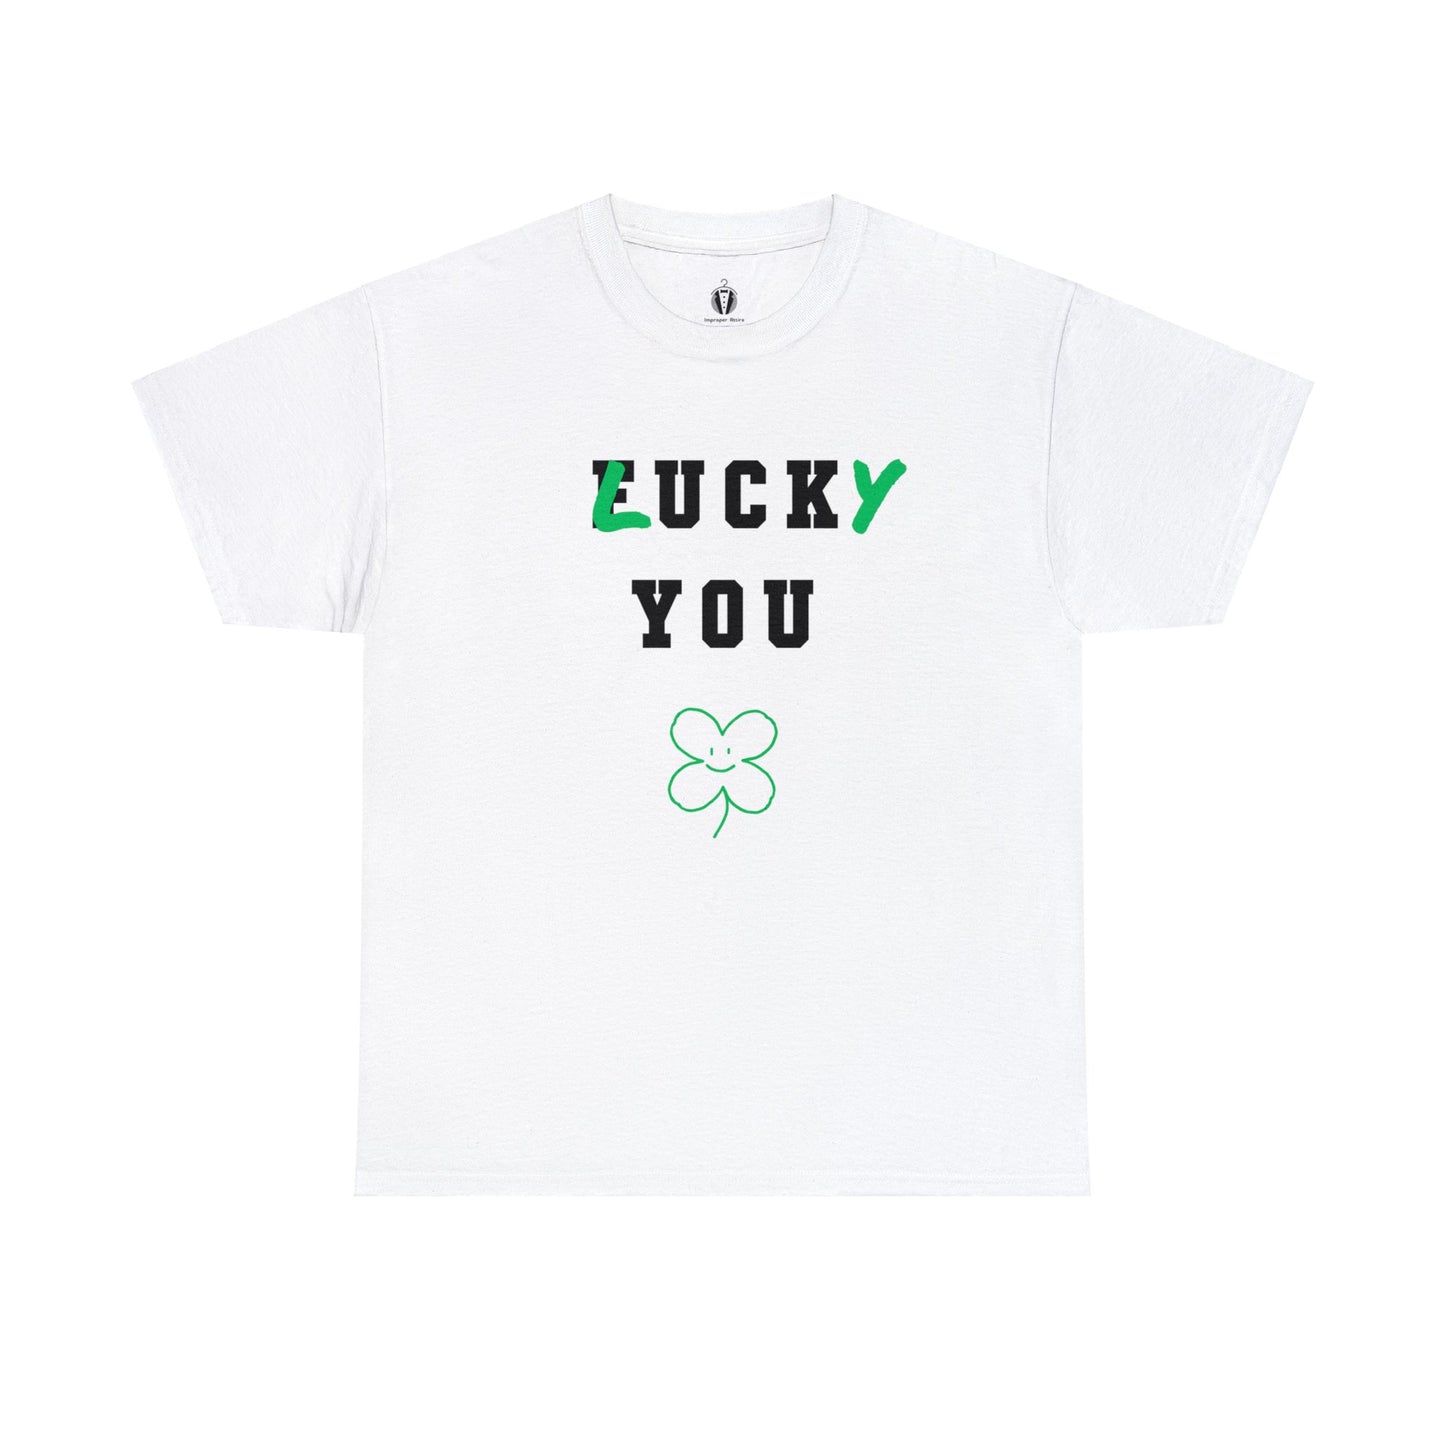 "lucky you" - Tee